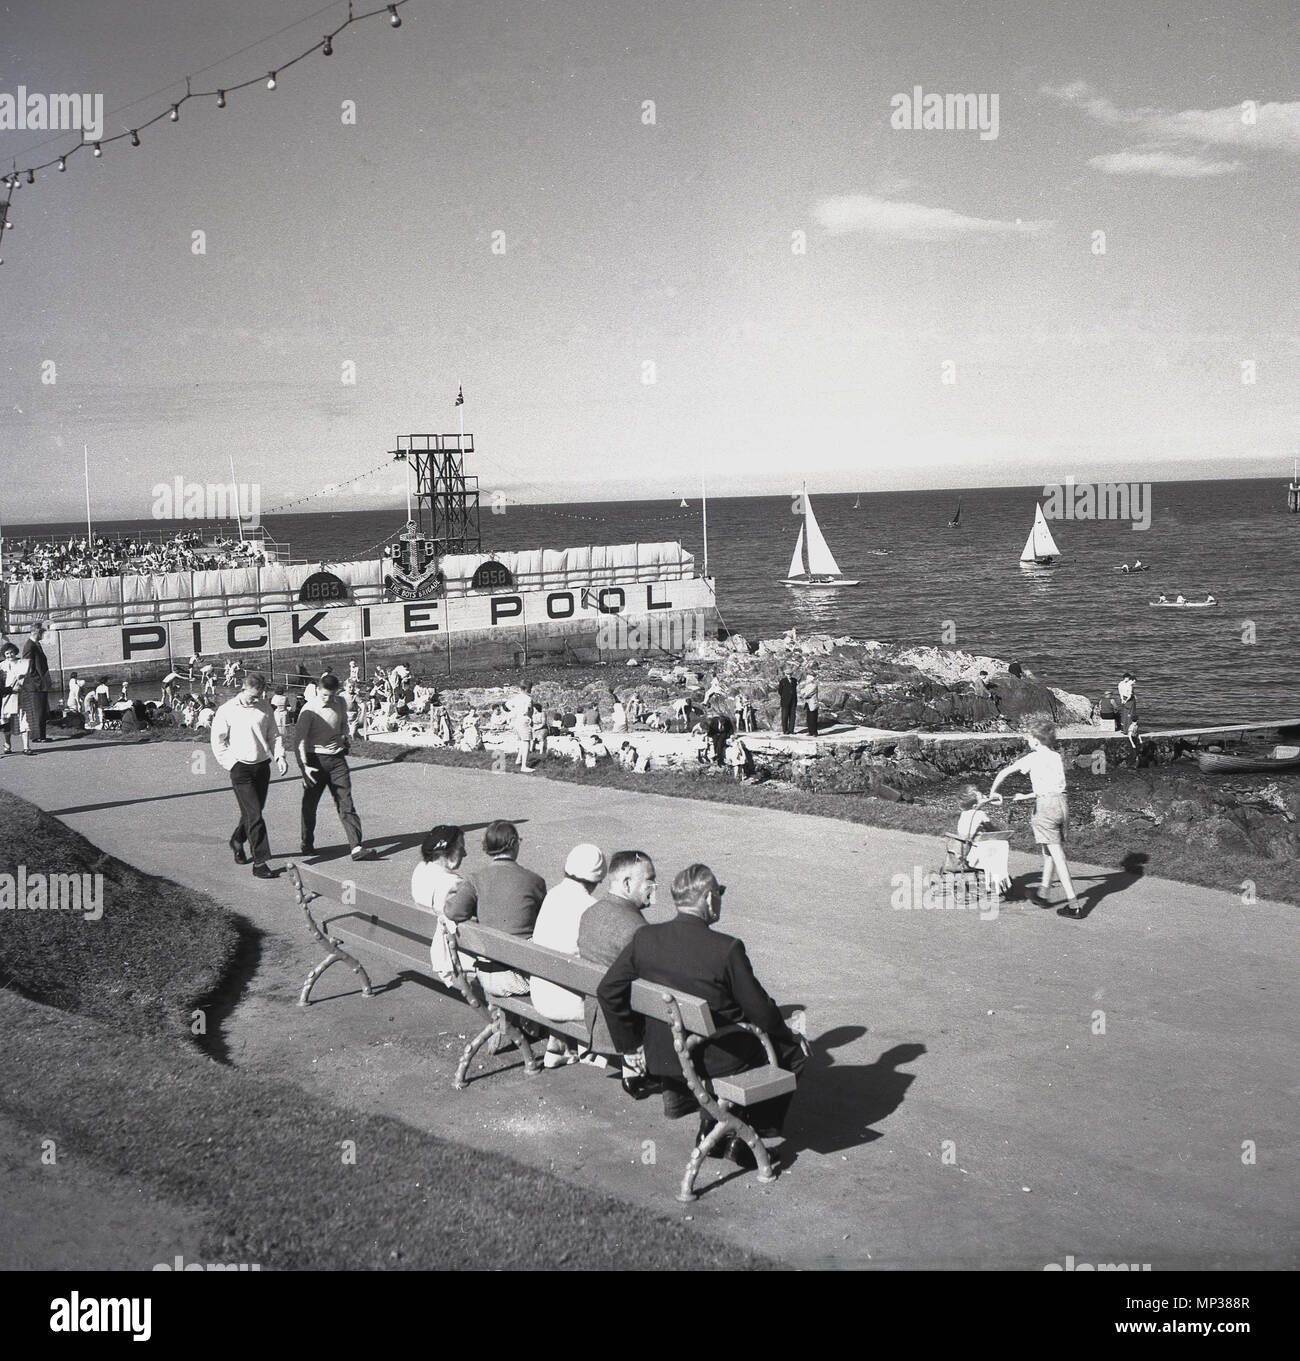 Années 1950, historique, Bangor Seafront, Co. Down, Irlande du Nord. La photo montre les gens sur la promenade de la côte et la piscine Pickie, une piscine extérieure d'eau de mer, qui a ouvert en 1931. Avec un plongeoir de 35 pieds, la piscine a vu des compétitions régulières de plongée et de natation y ont lieu, malgré l'eau froide. La piscine a été démolie à la fin des années 1980. Banque D'Images